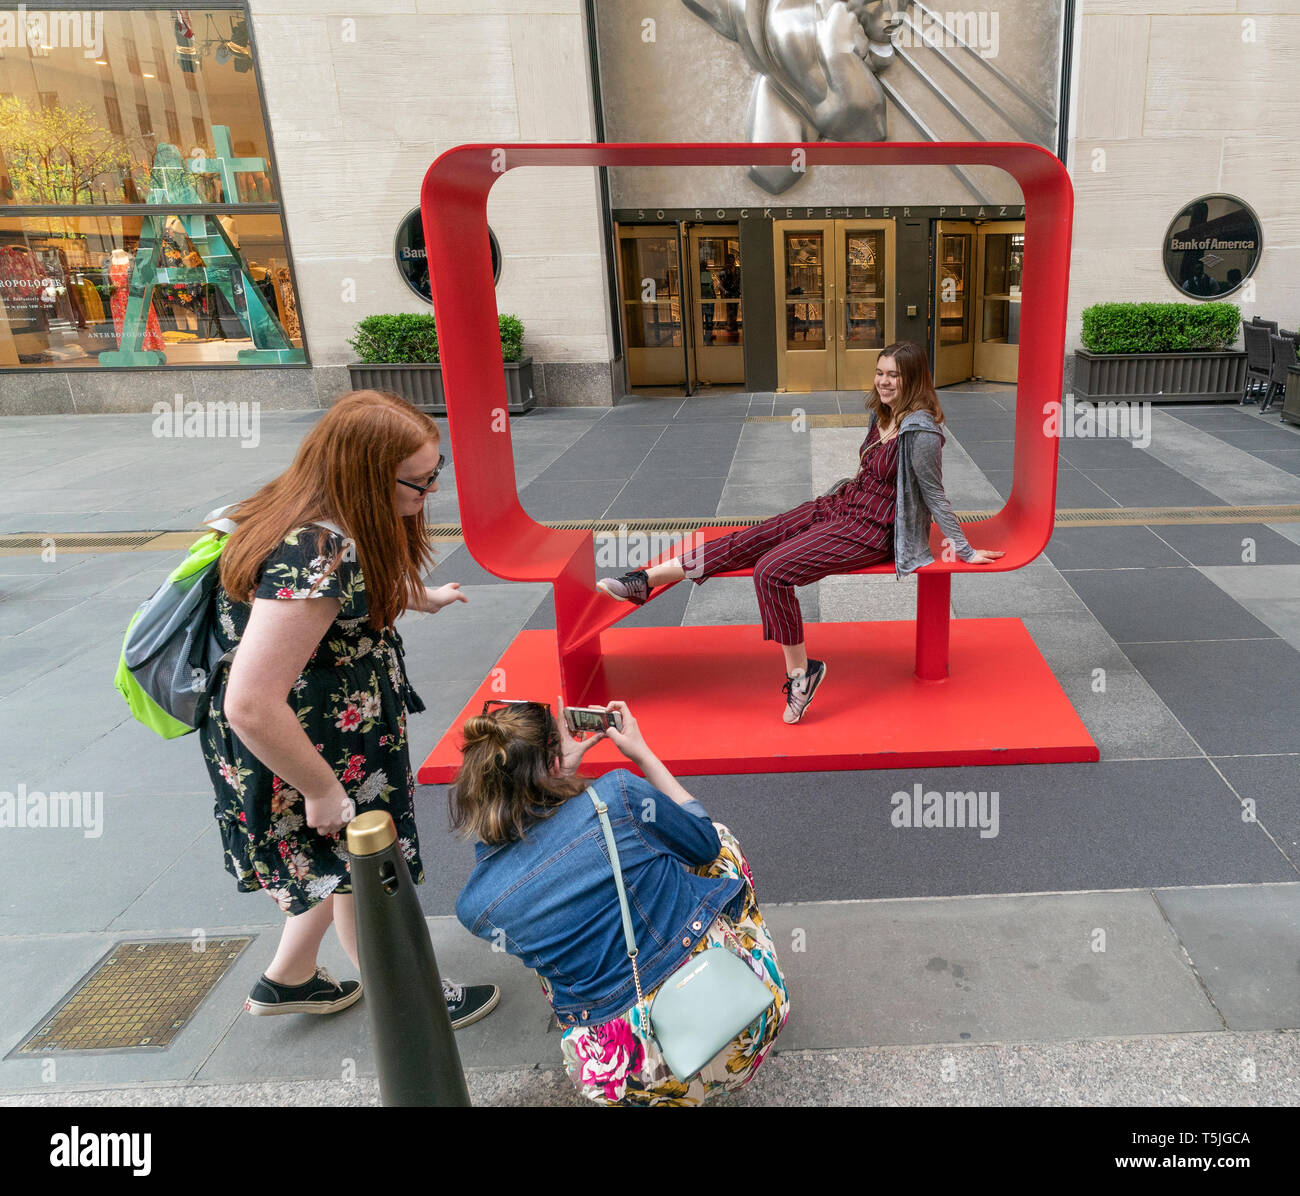 New York, NY - Aprile 25, 2019: Hank Willis Thomas scultura Josephine e Kazumi (reale rosso) sul display durante la mostra inaugurale fregio scultura al Rockefeller Center Foto Stock